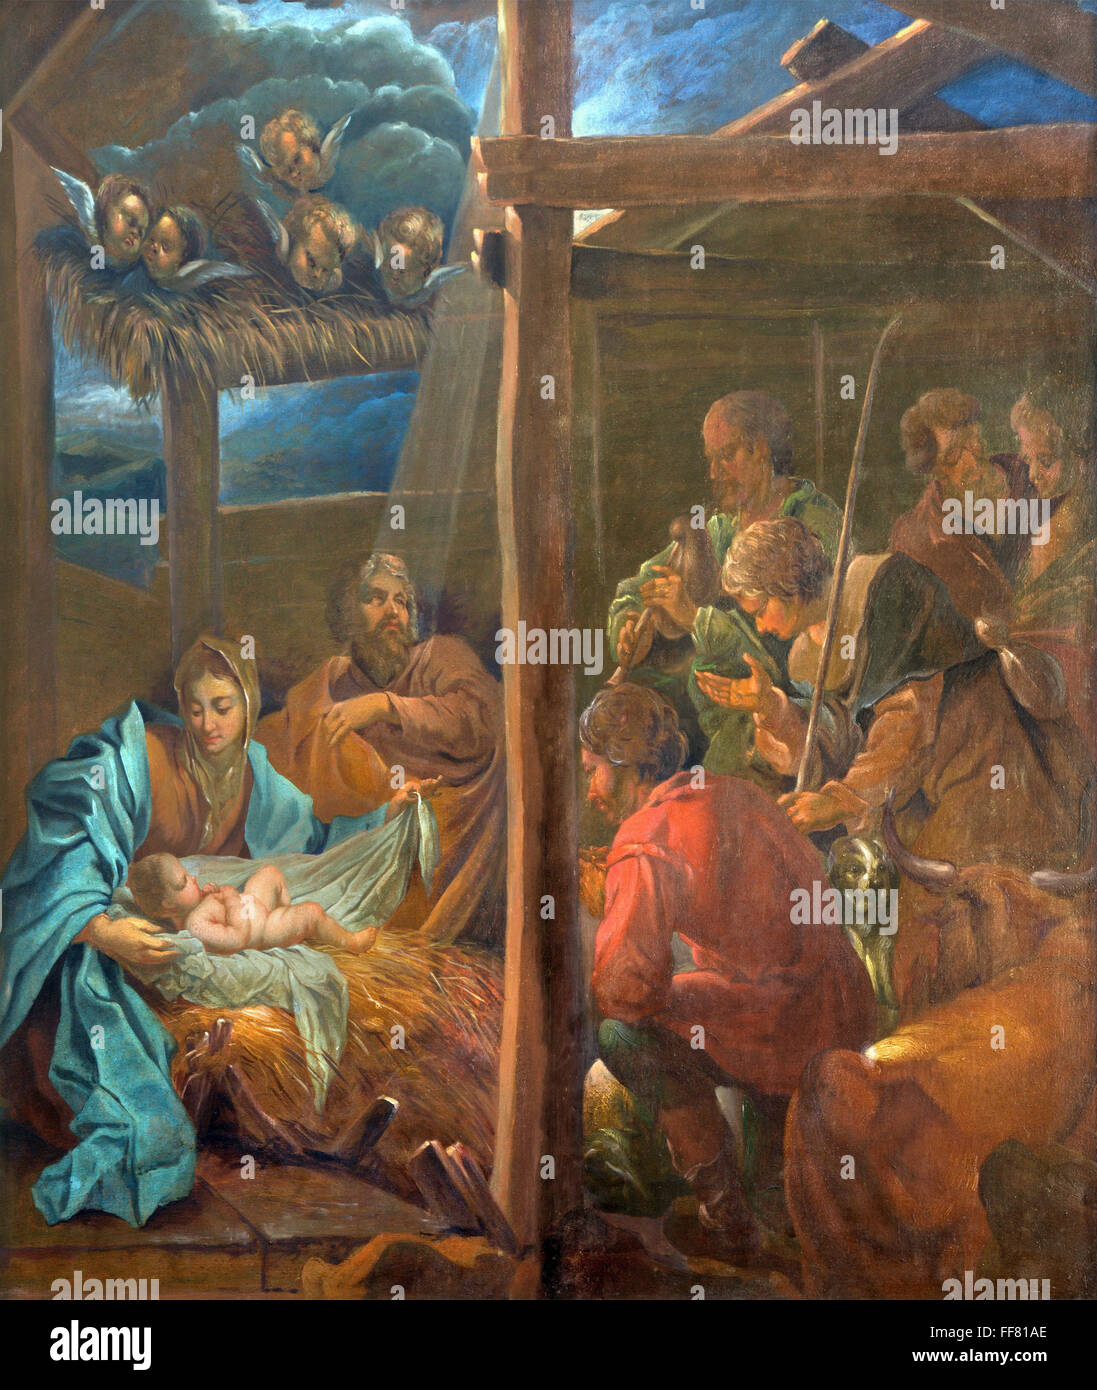 BRUGGE, BELGIQUE - 12 juin 2014 : la peinture de la Nativité par Jan van den Kerckhove 1707 à st. Jacobs (église) Jakobskerk Banque D'Images